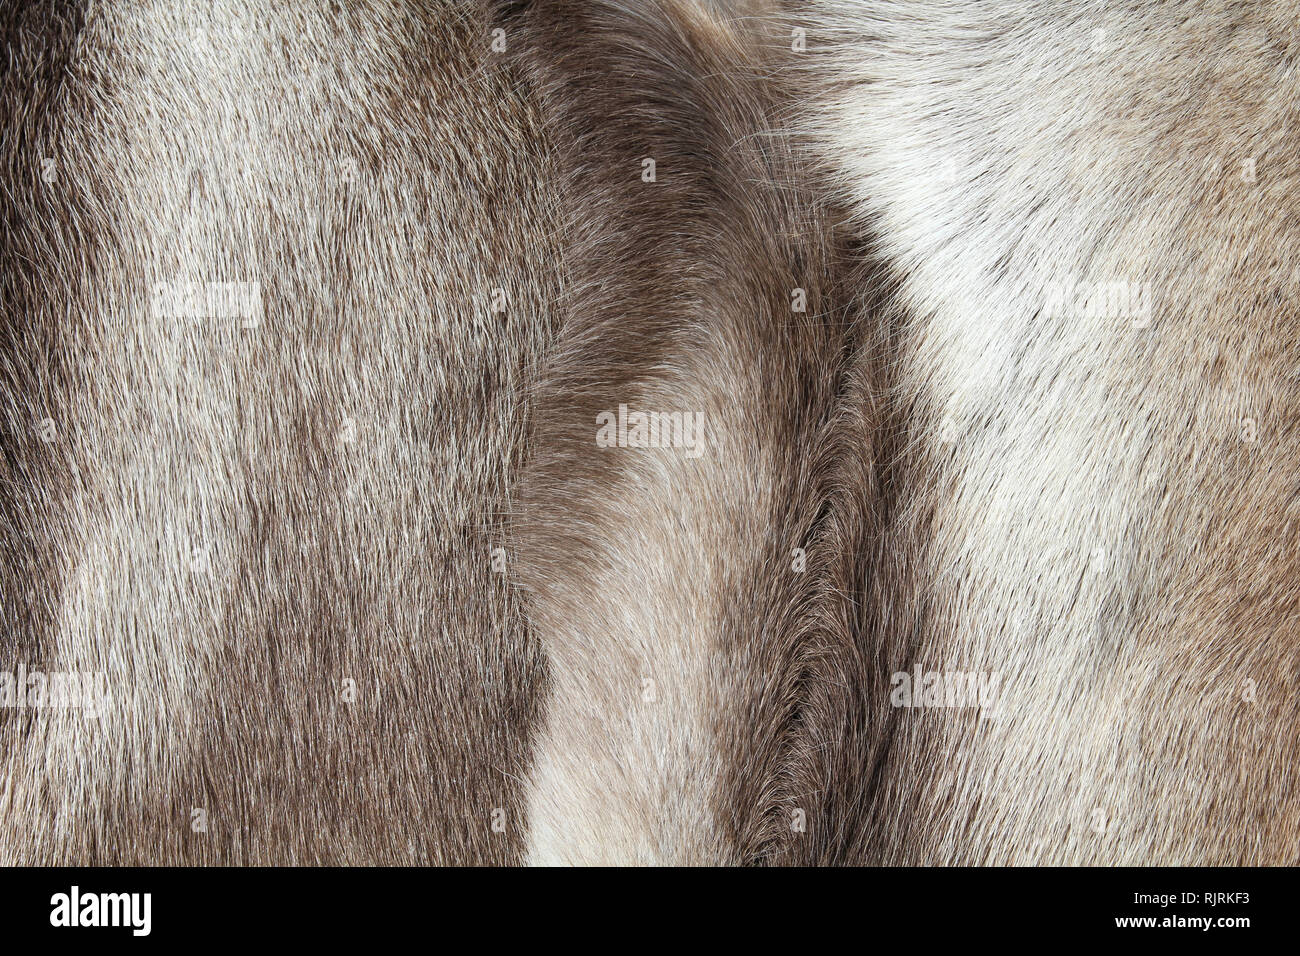 Pelliccia di renna immagini e fotografie stock ad alta risoluzione - Alamy